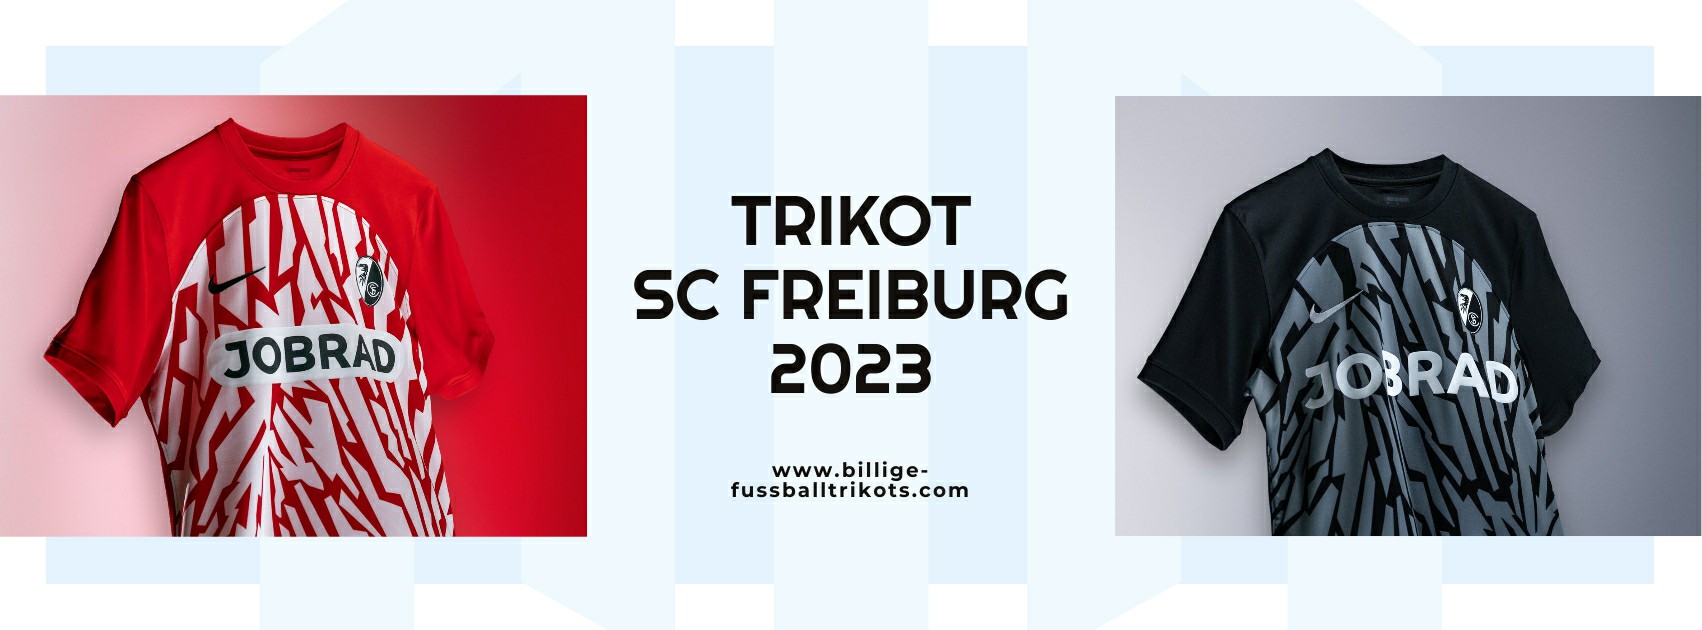 SC Freiburg Trikot 2023-2024